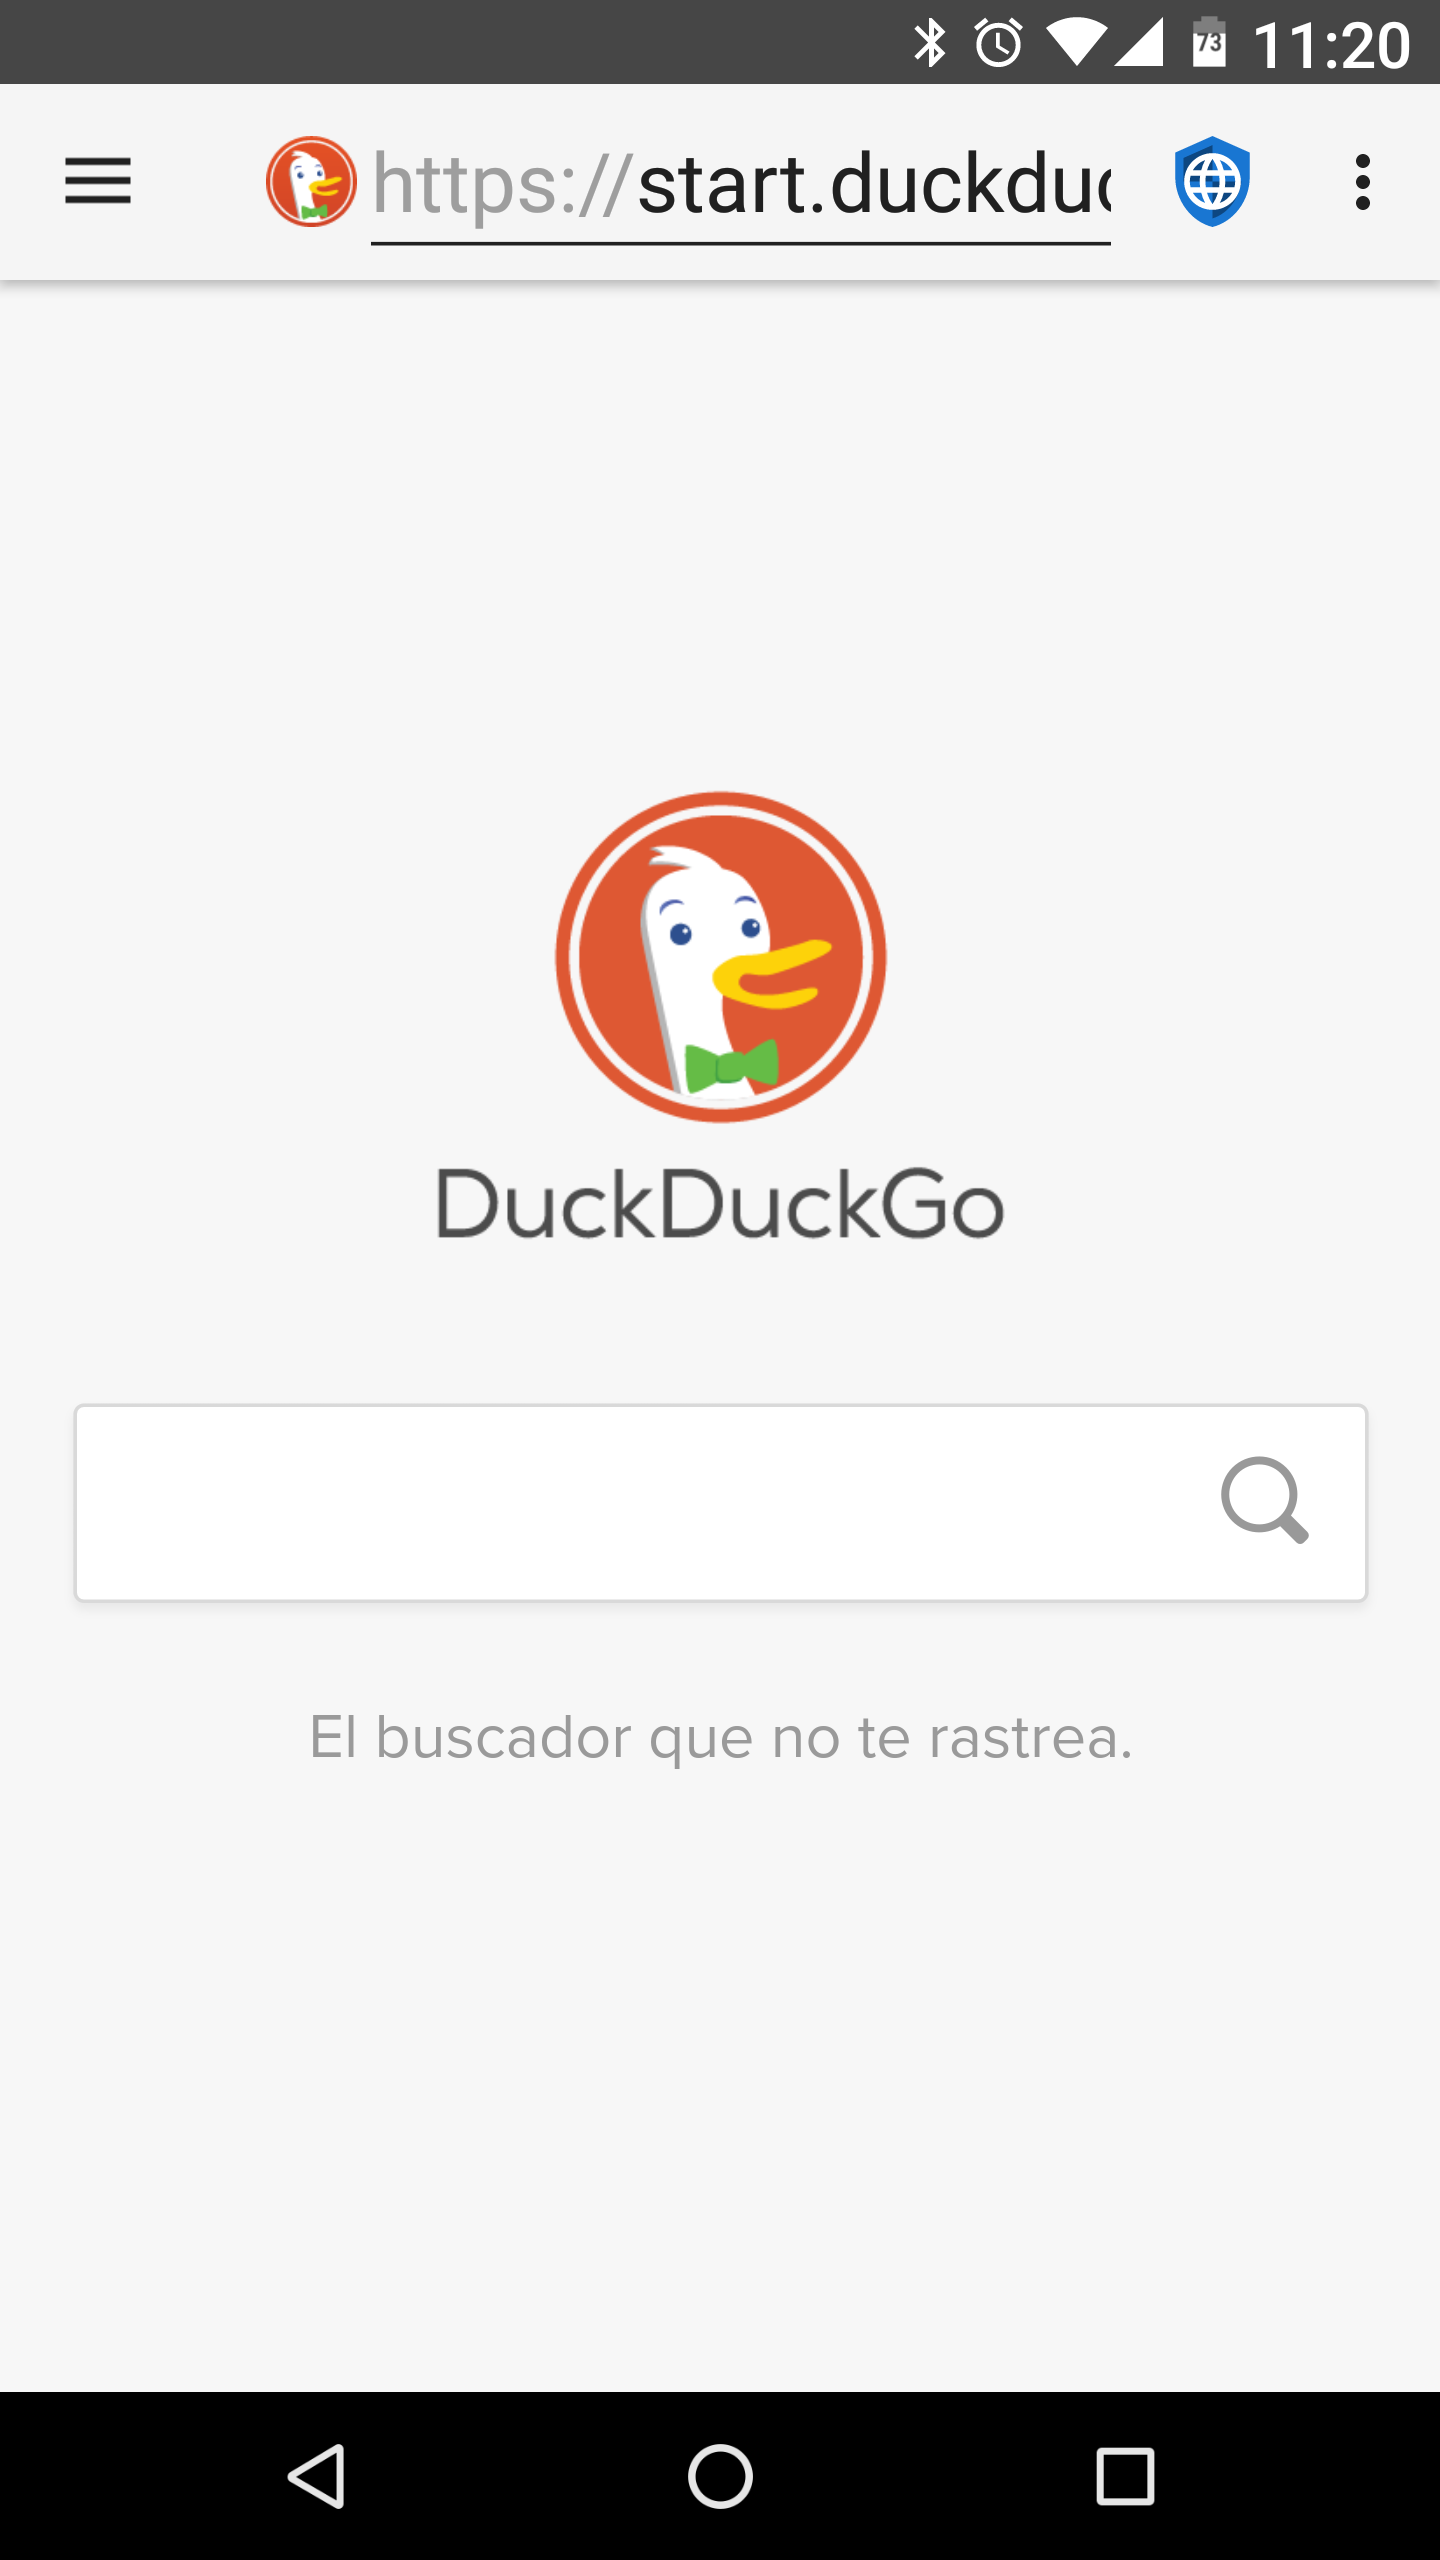 01-DuckDuckGo.png